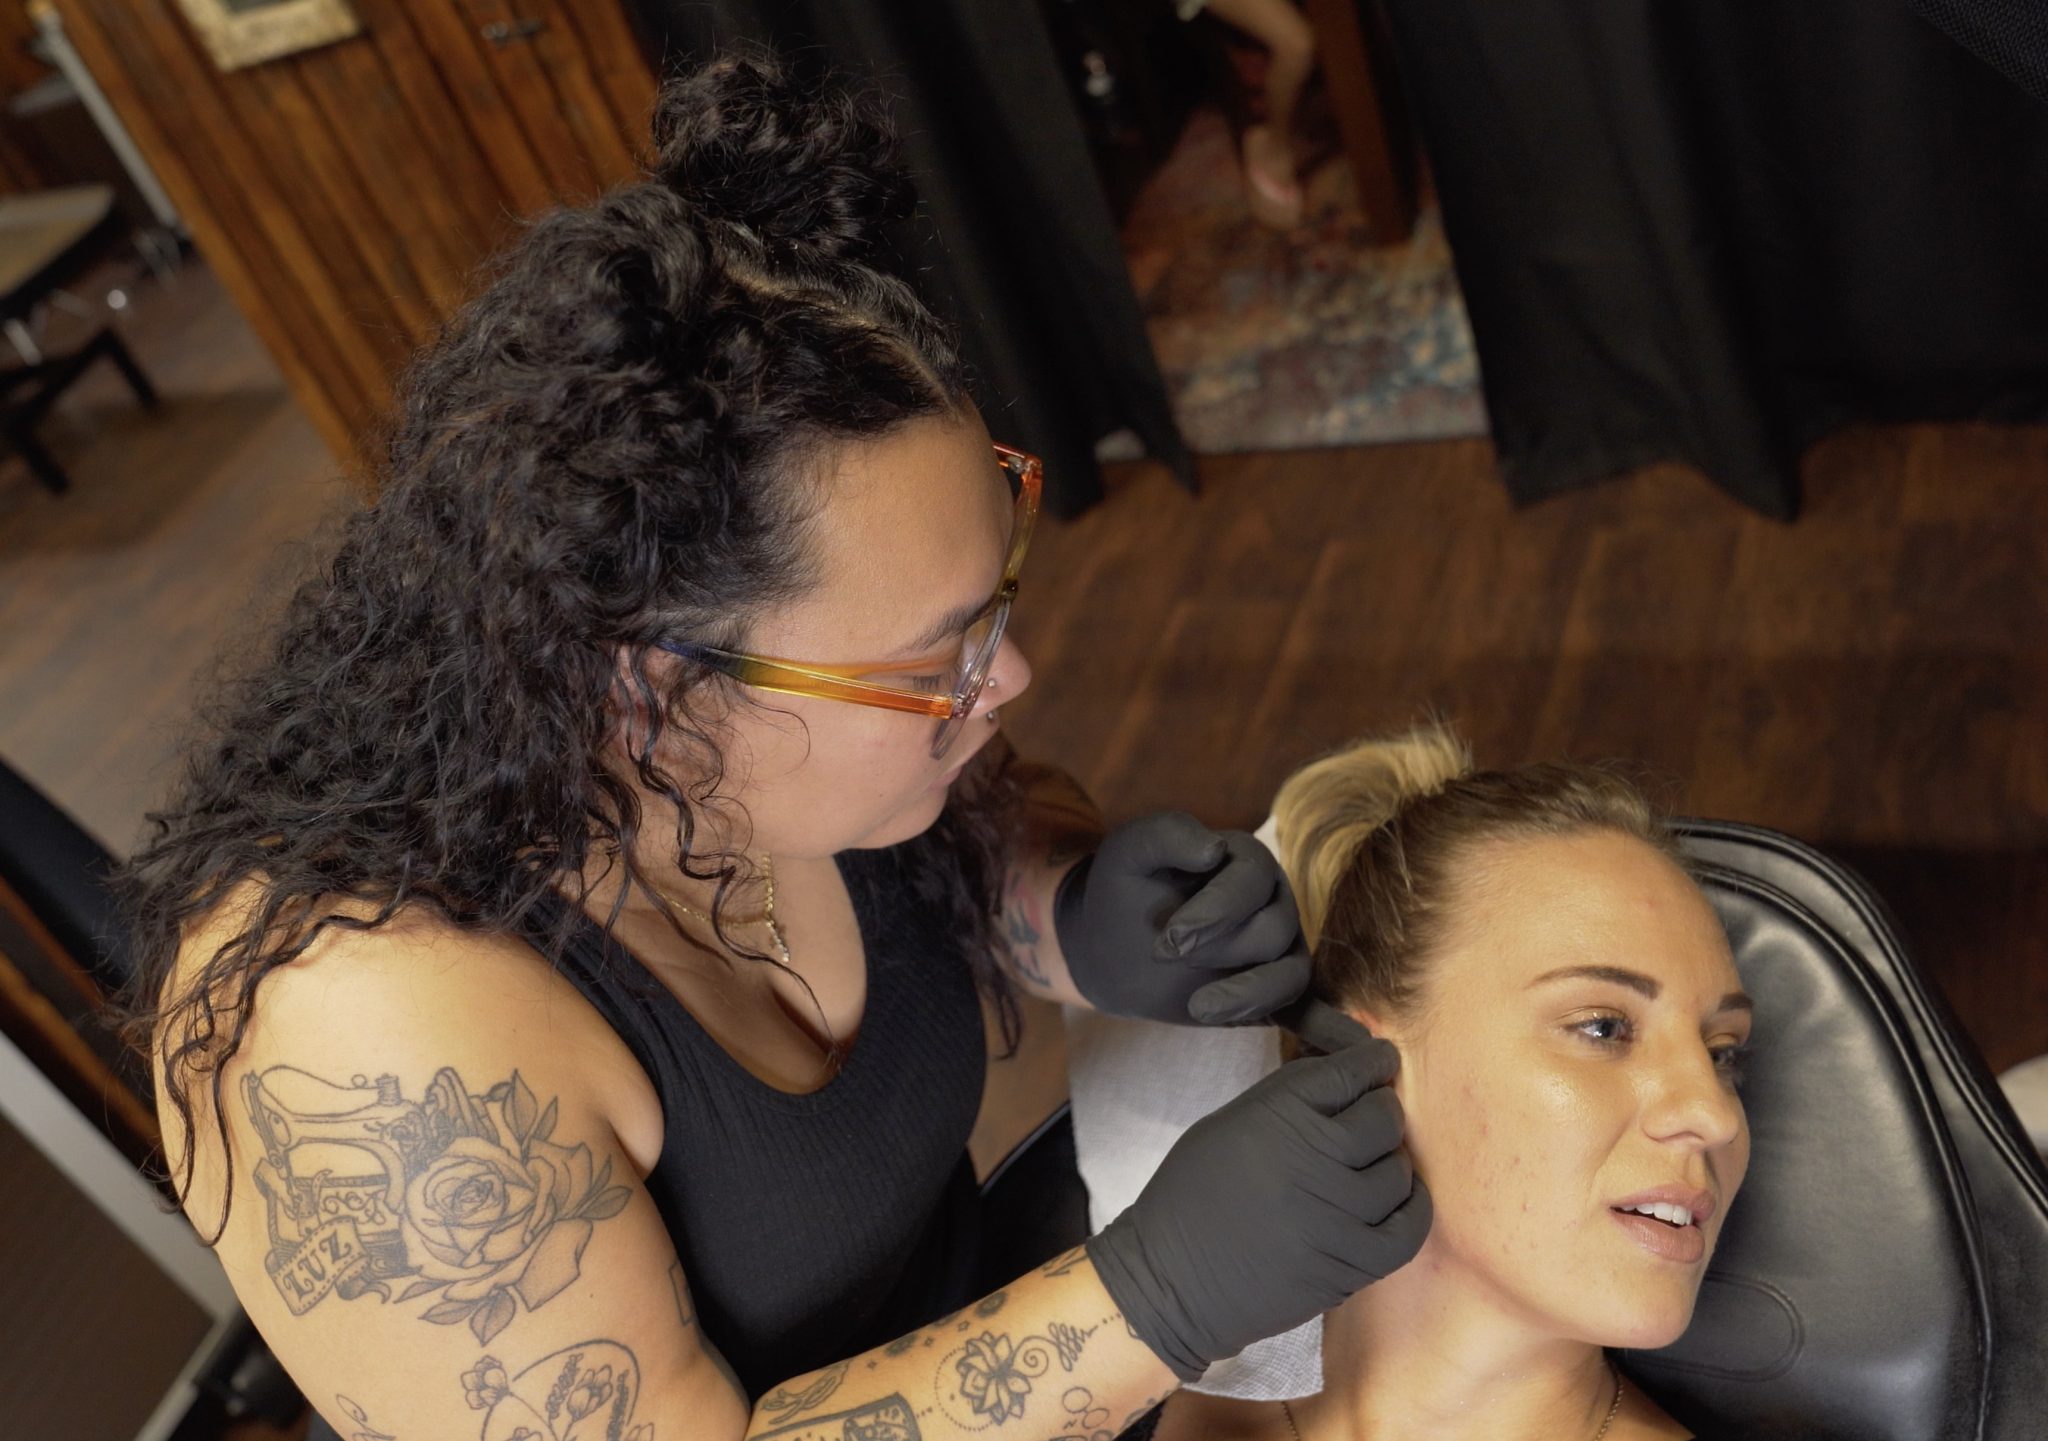 Woman getting her ear pierced